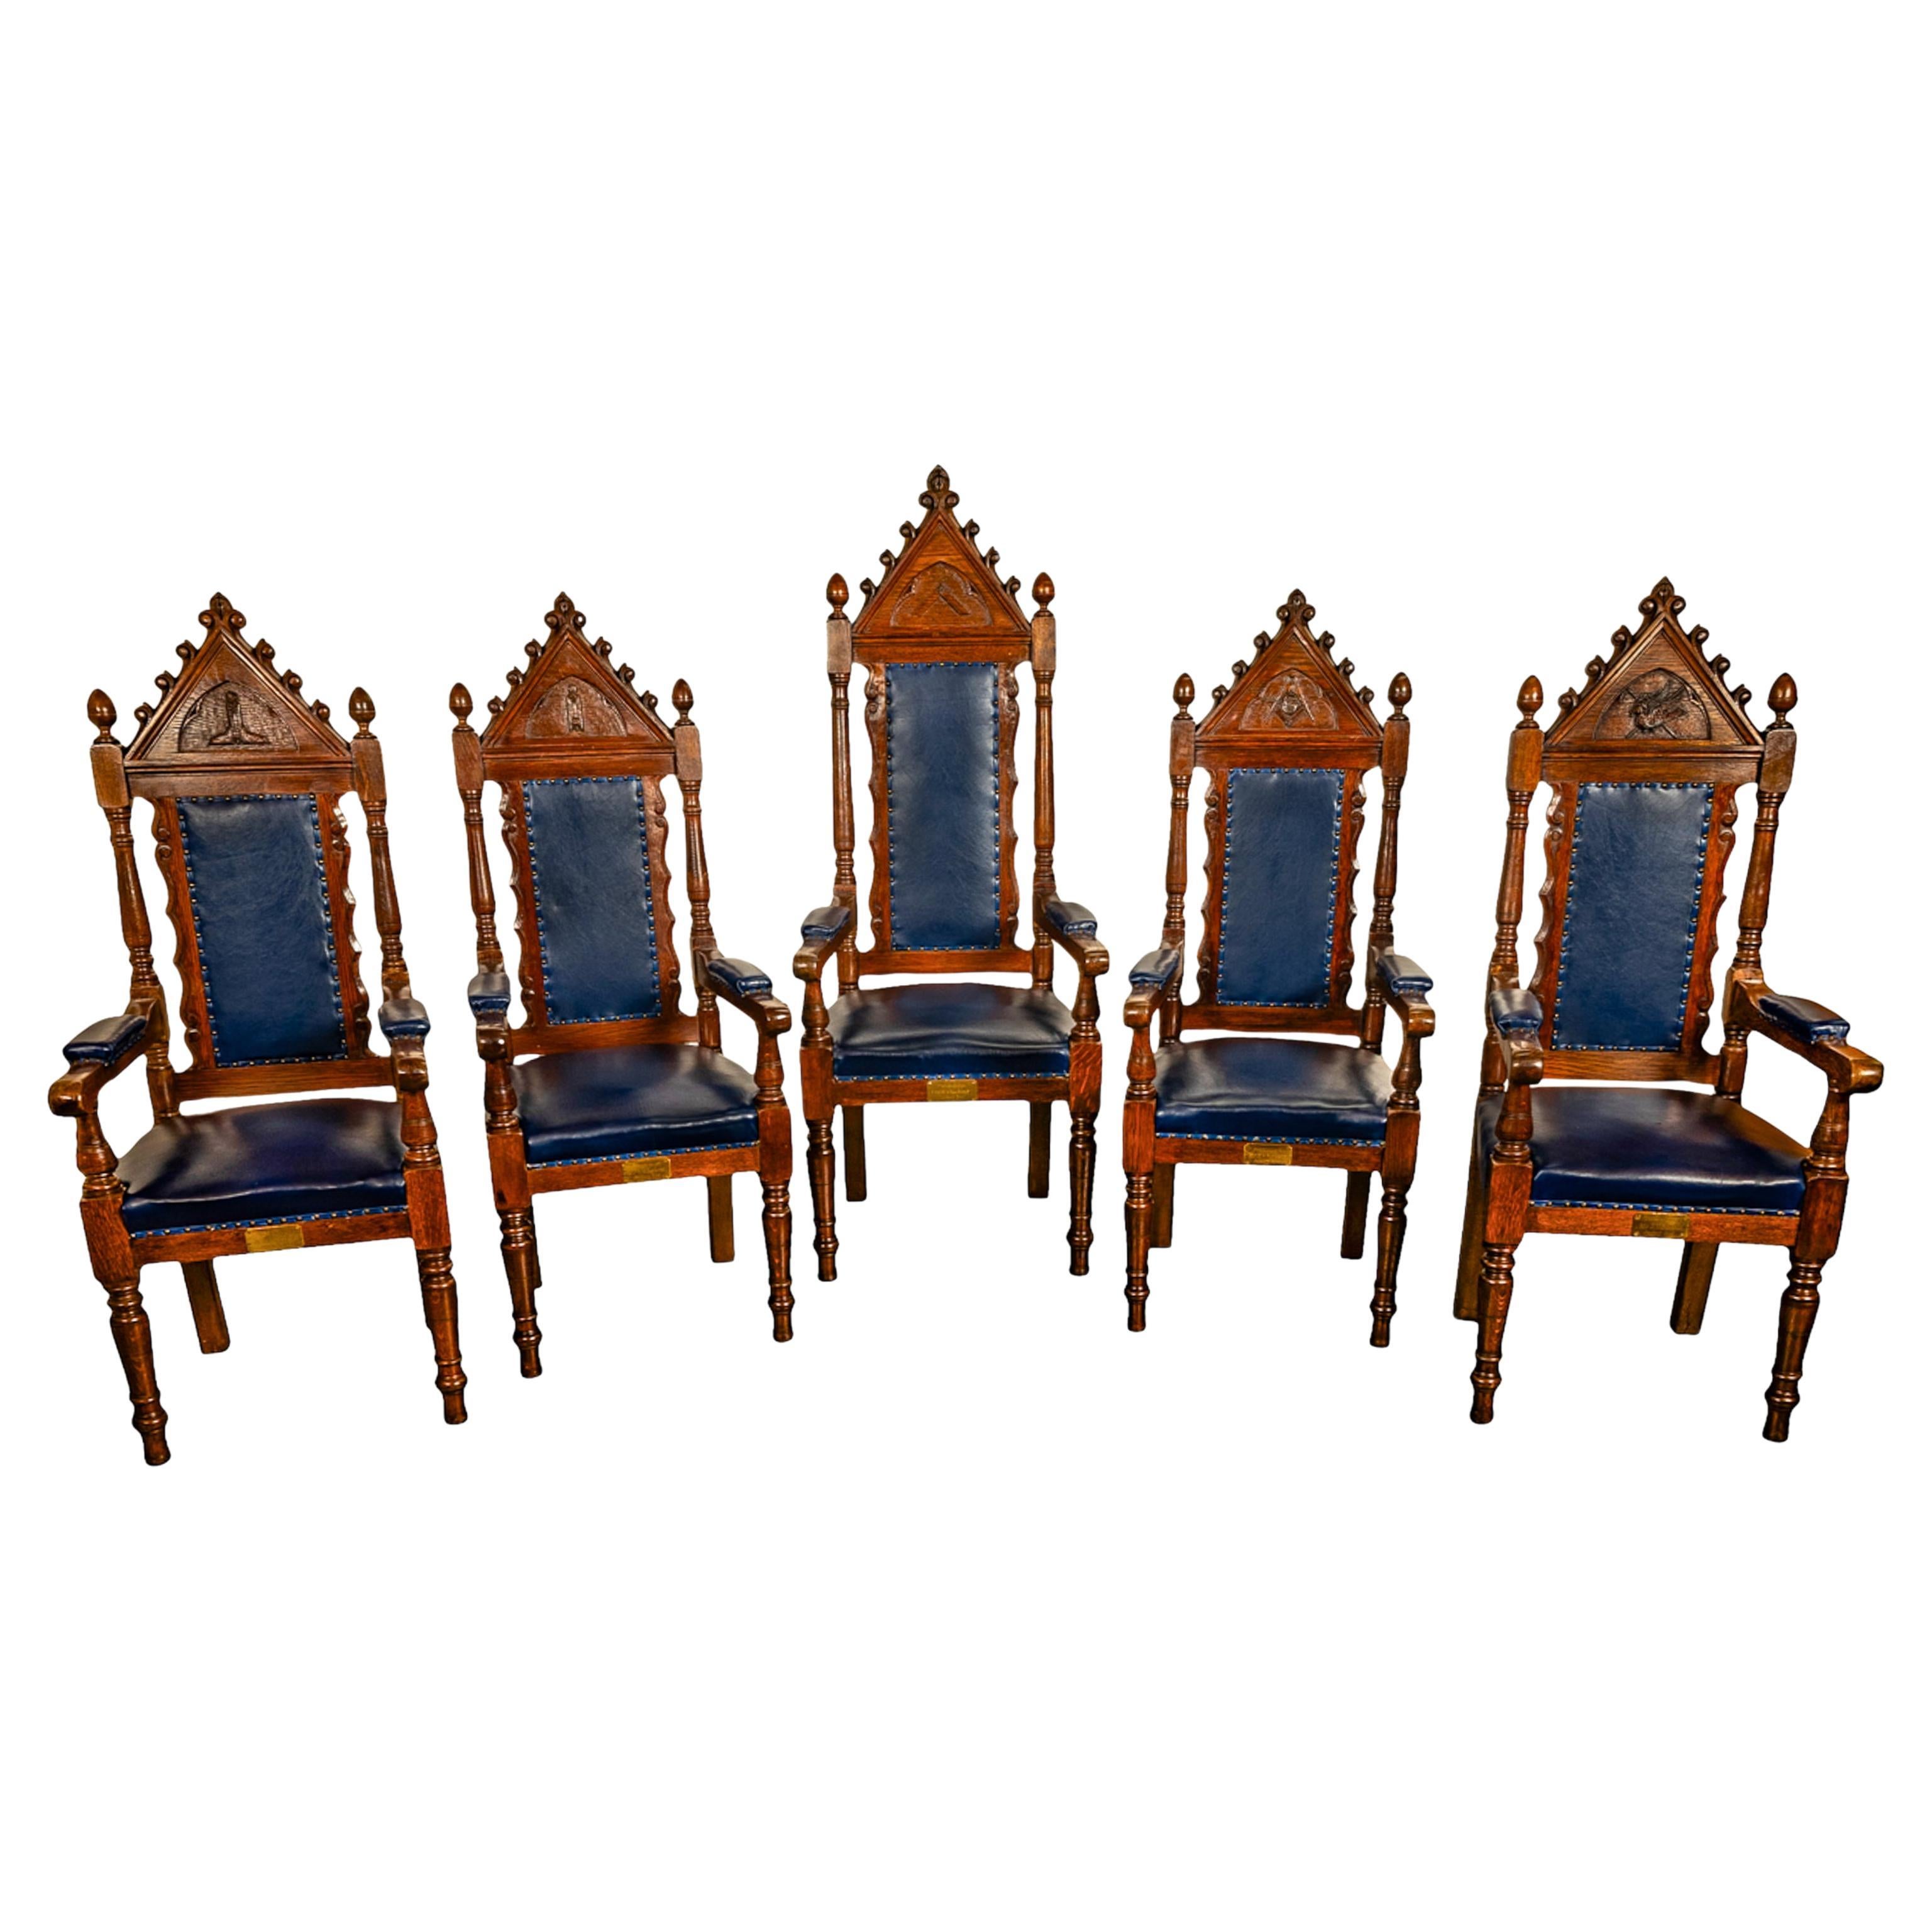 Un bel ensemble de cinq chaises de trône maçonniques irlandaises en chêne et cuir de style néo-gothique, vers 1900.
Chaque chaise possède un fronton architectural pointu avec des dispositifs à volutes et un fleuron à volutes au sommet. Chaque chaise